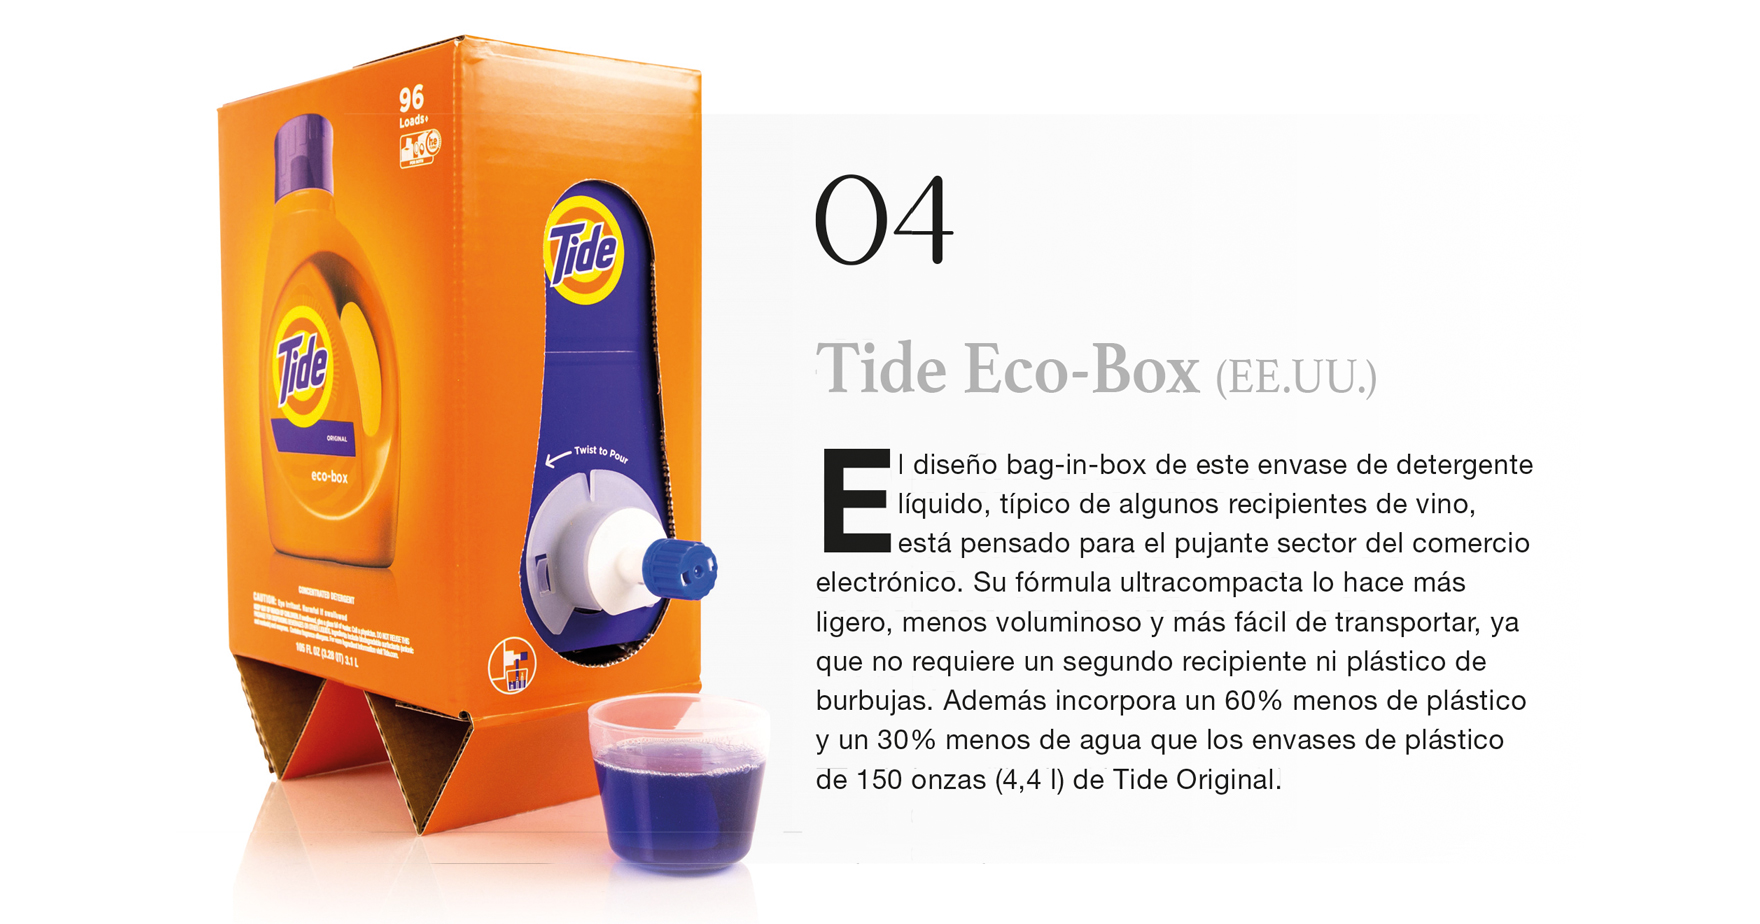 Tide Eco-Box (EE.UU.)